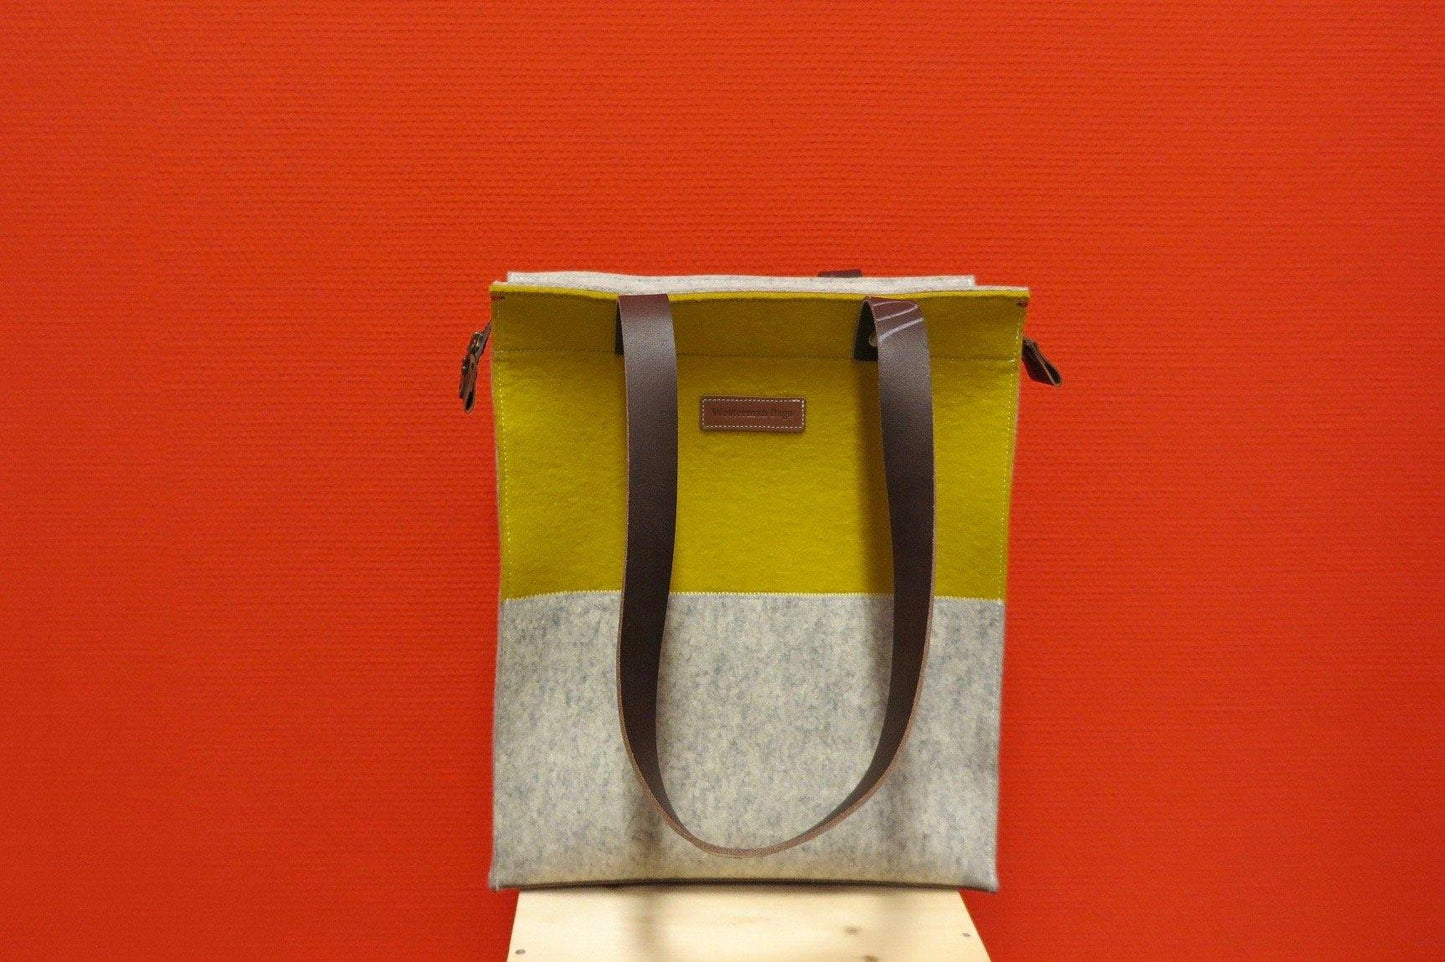 CONTRAST - Shopper XL vilten tas | geel en grijs | Rits - Westerman Bags vilten tassen en hoezen. Dutch Design.